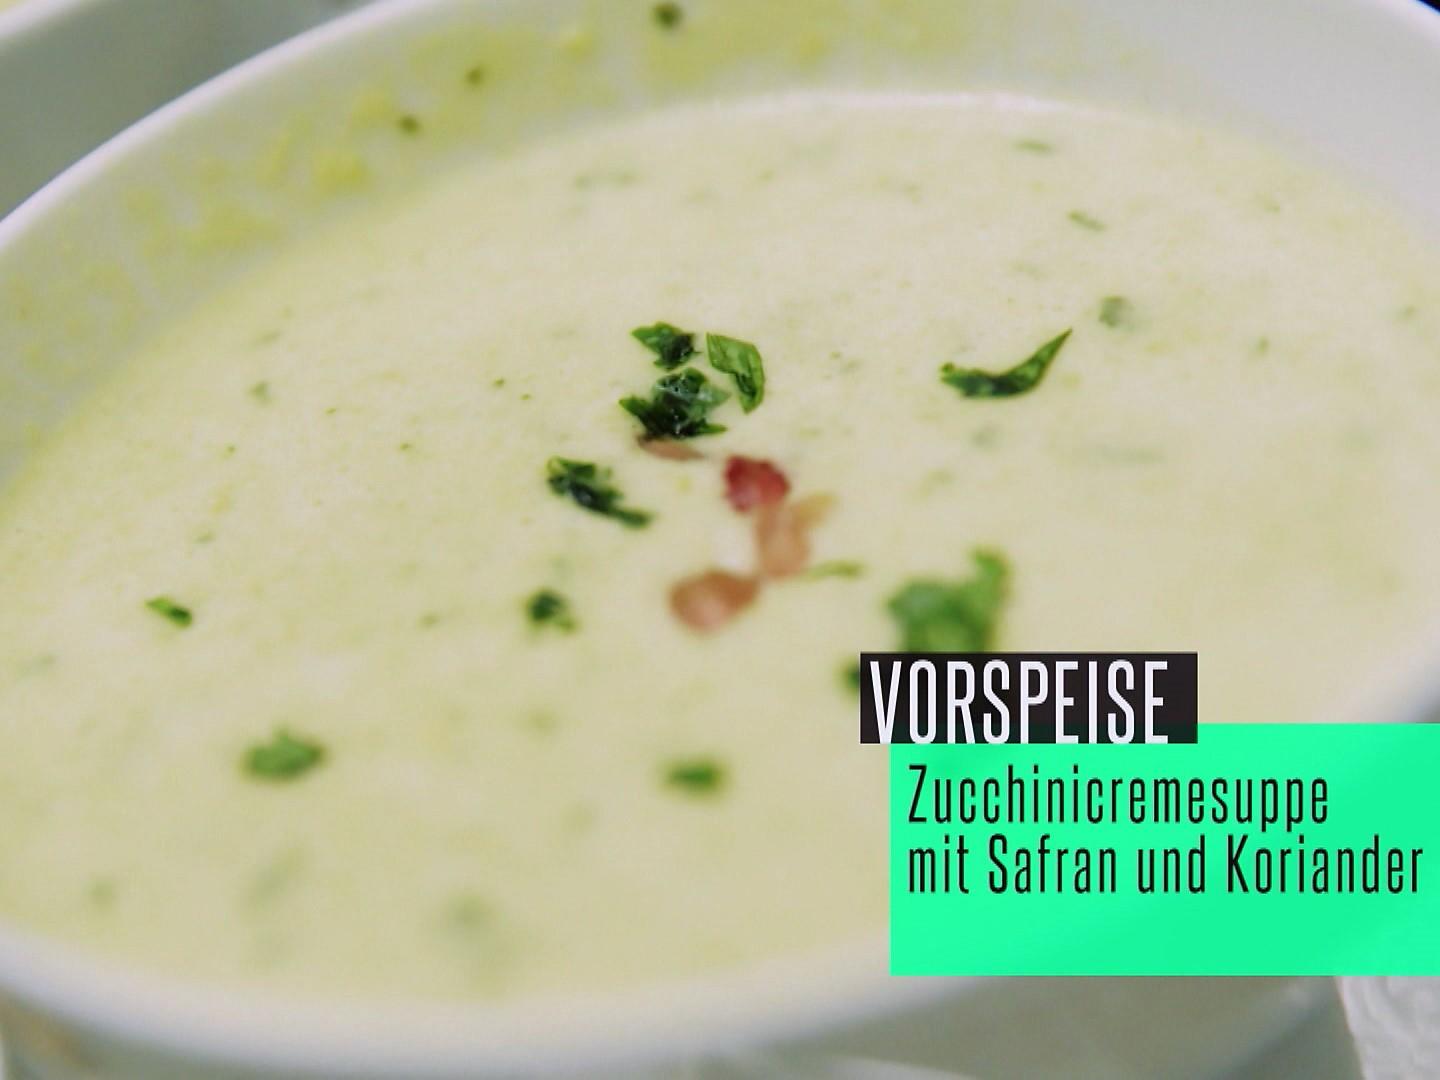 Zucchinicremesuppe mit Safran und Koriander - Rezept - kochbar.de